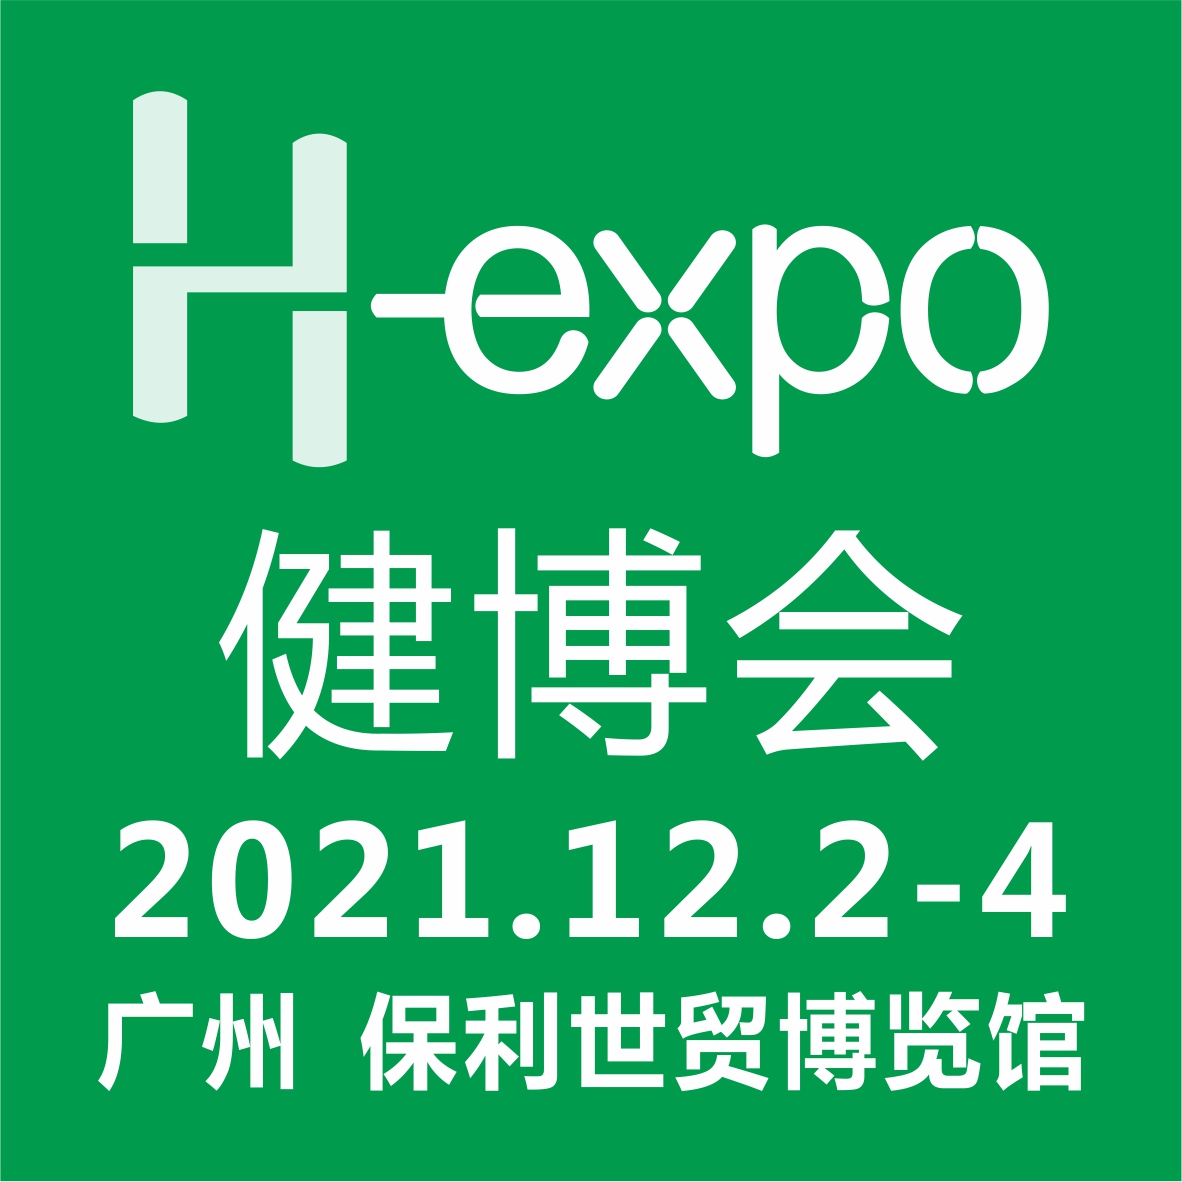 H-expo | 31届广州健博会 | 智展展览